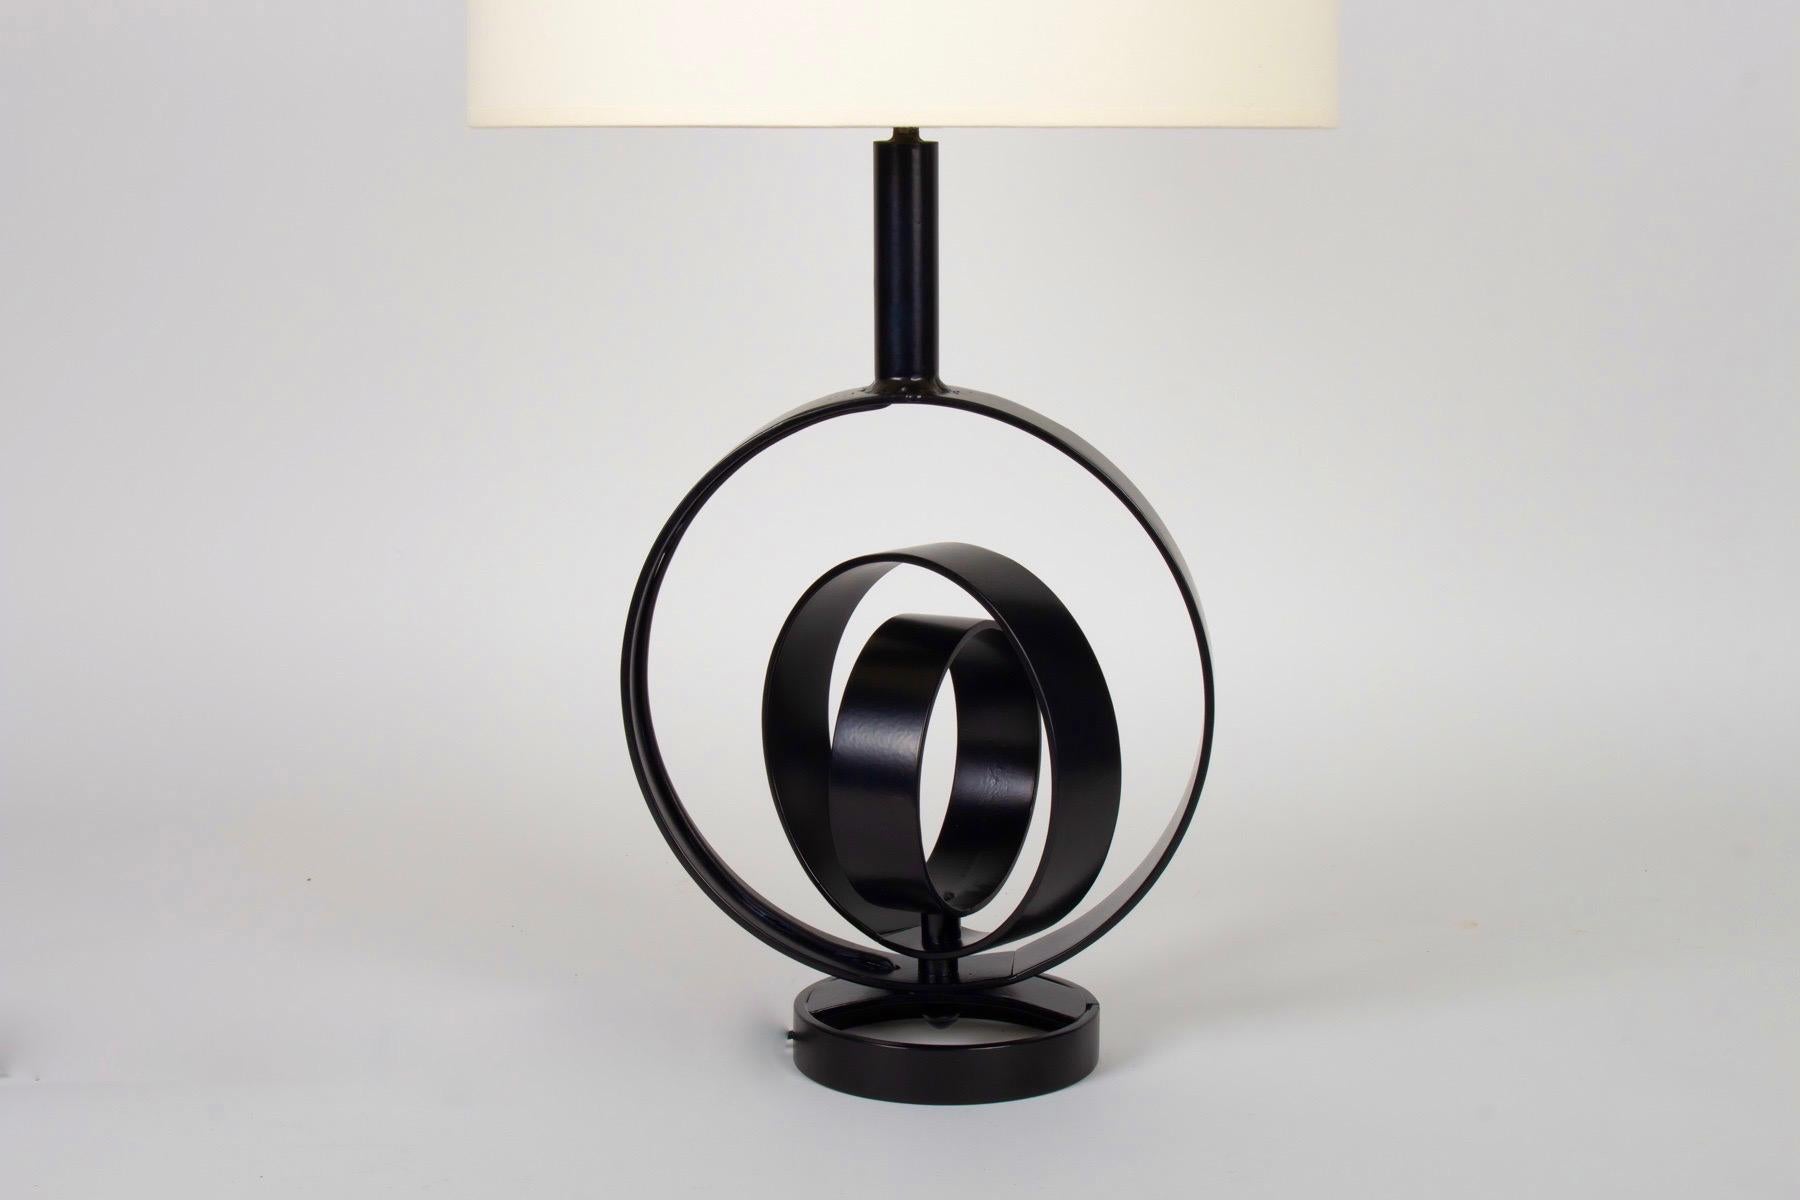 Große Lampe aus schwarzem Schmiedeeisen, inspiriert durch den Erdglobus von 1970
Wunderschöne, von Hand gefertigte Schmiedearbeiten. Einzigartiges Stück
Bestehend aus einem großen Kreis in schwarzem flachen Schmiedeeisen, in dem 2 andere Kreise in